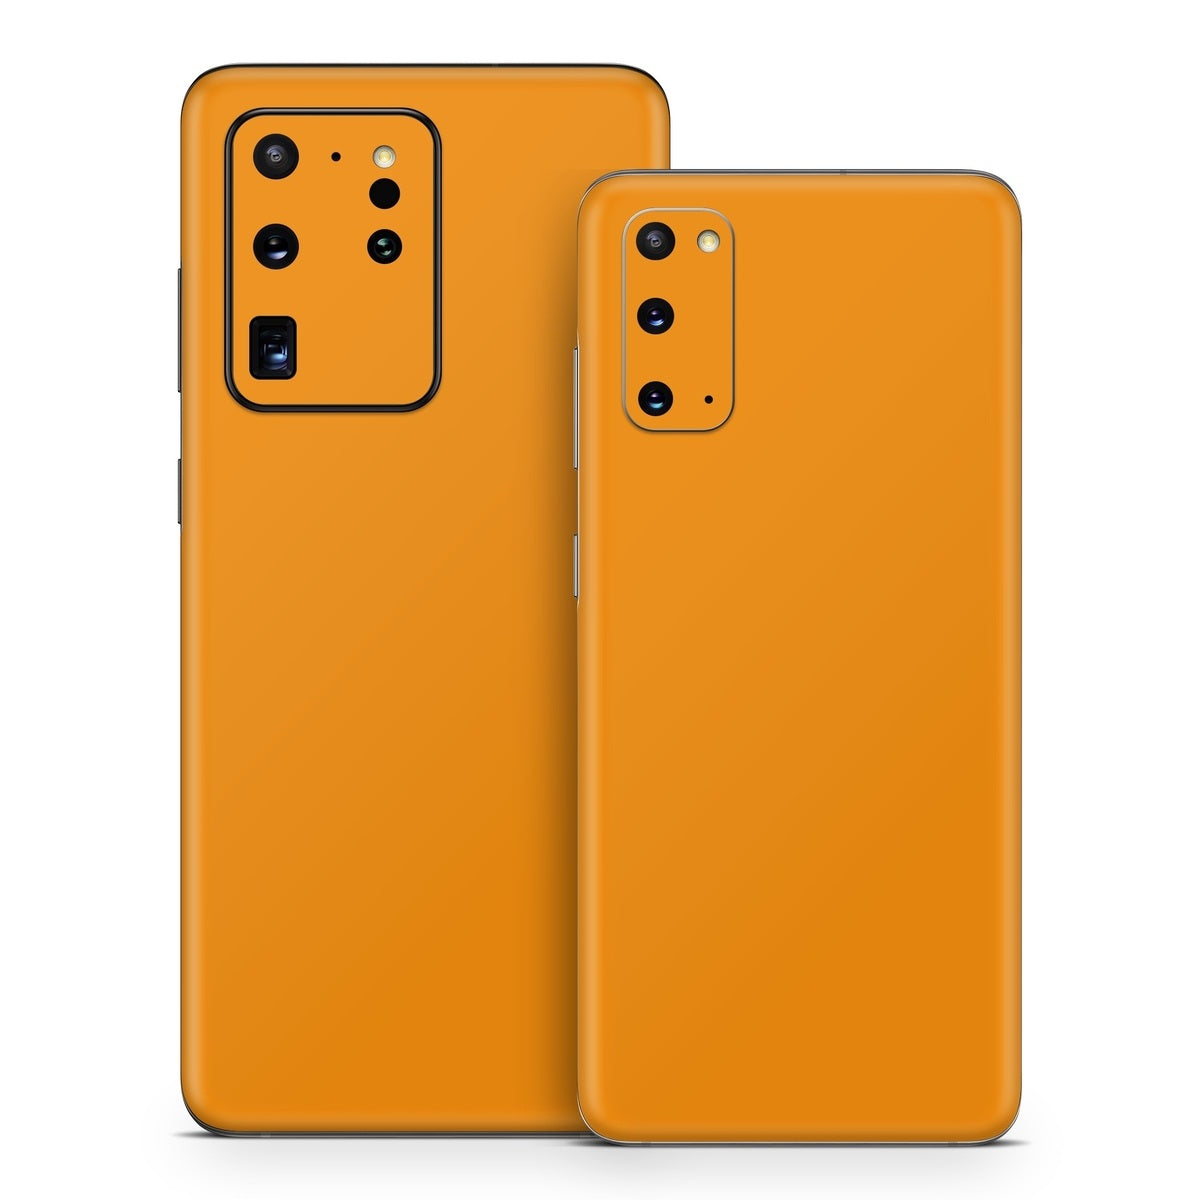 Solid State Orange - Samsung Galaxy S20 Skin